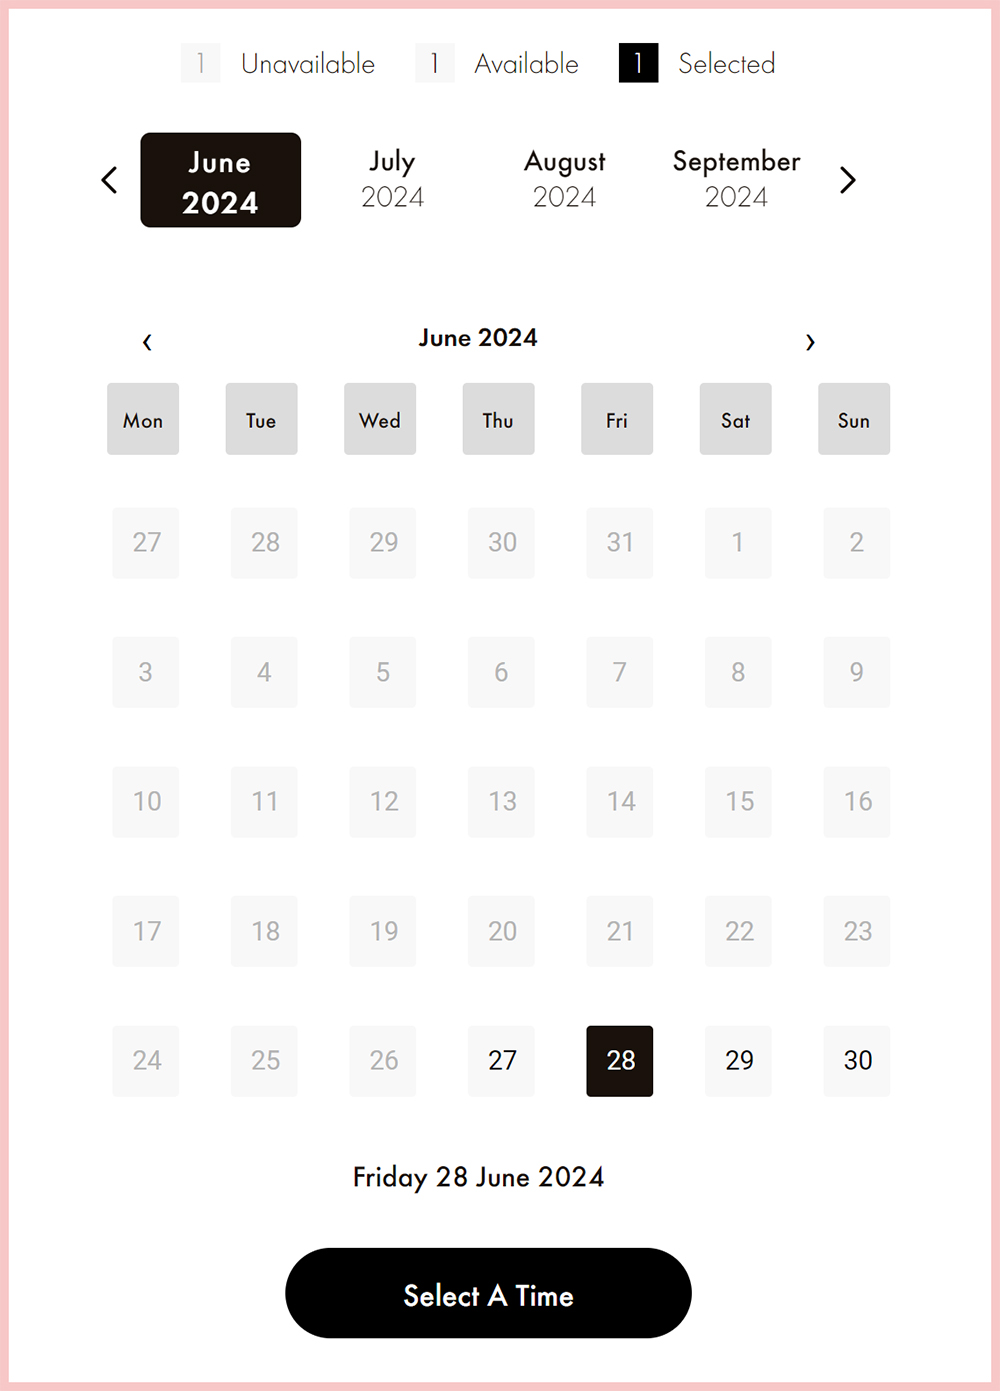 【曼谷景點】Louis Vuitton Visionary Journey｜曼谷最時尚沉浸式空間展覽，免費參觀再送LV獨家紀念品